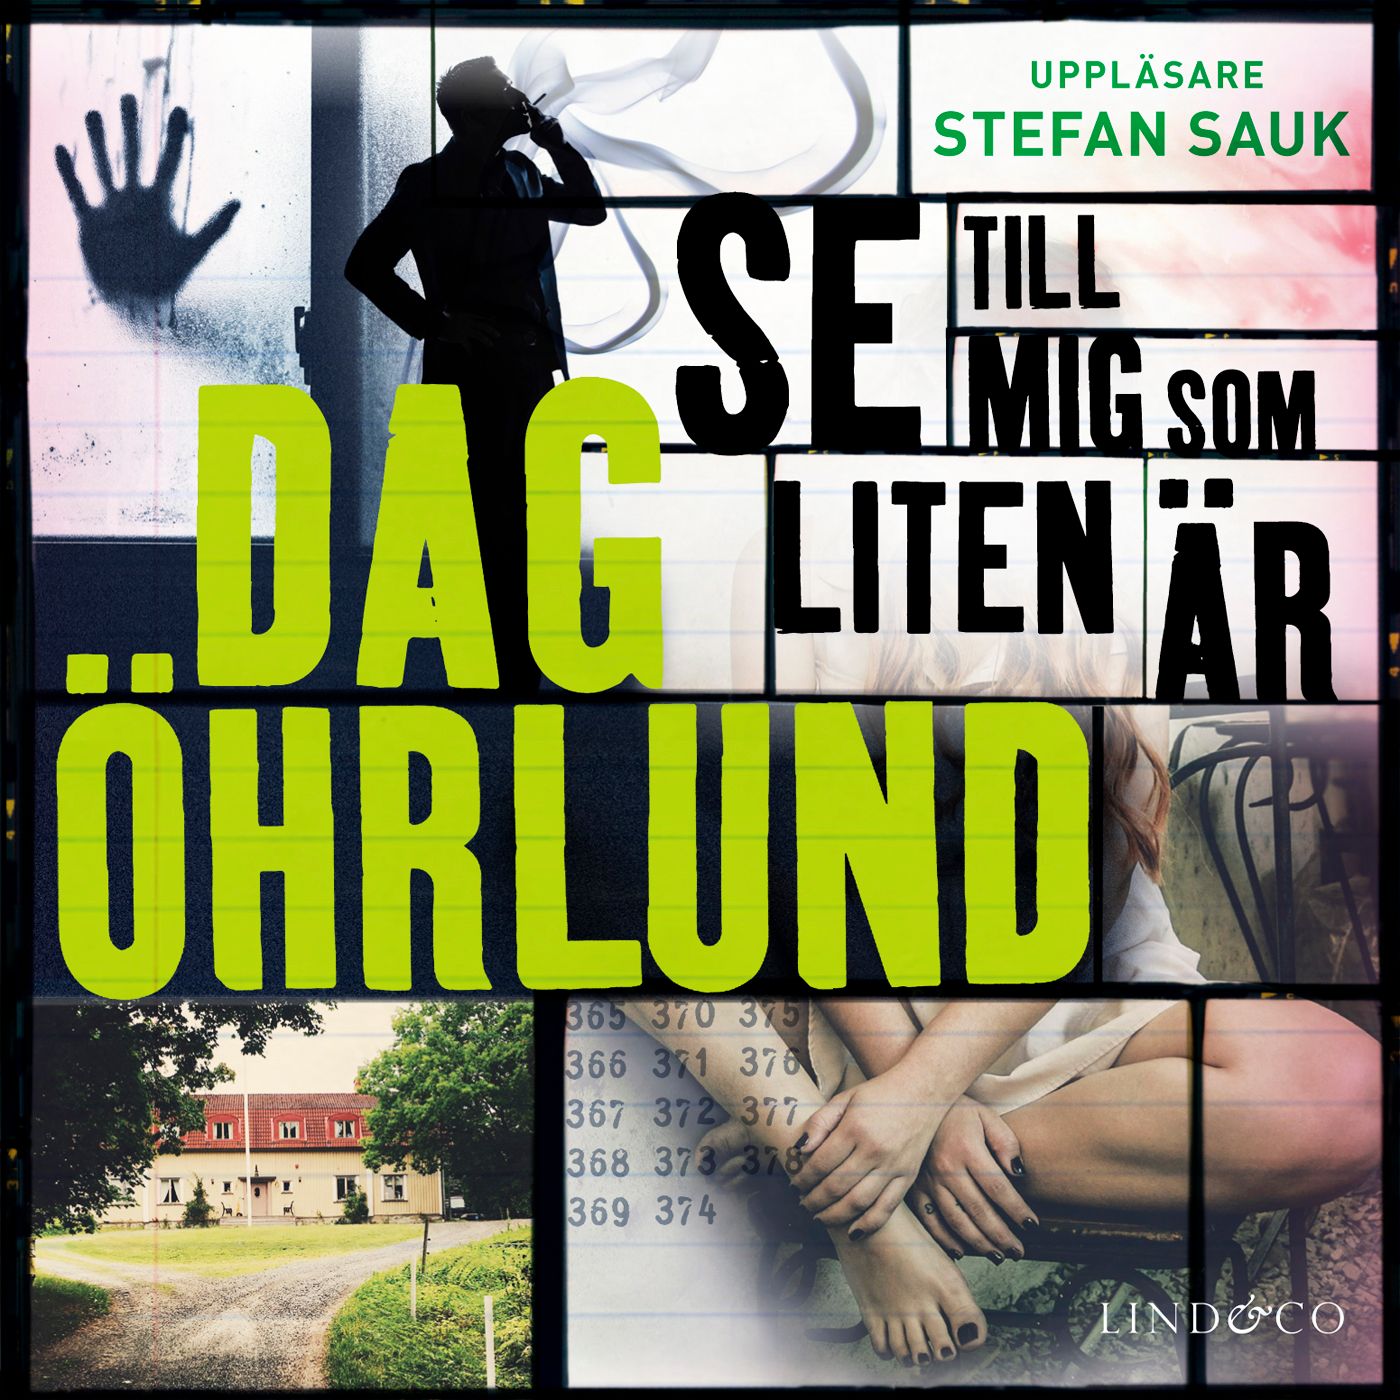 Se till mig som liten är, ljudbok av Dag Öhrlund